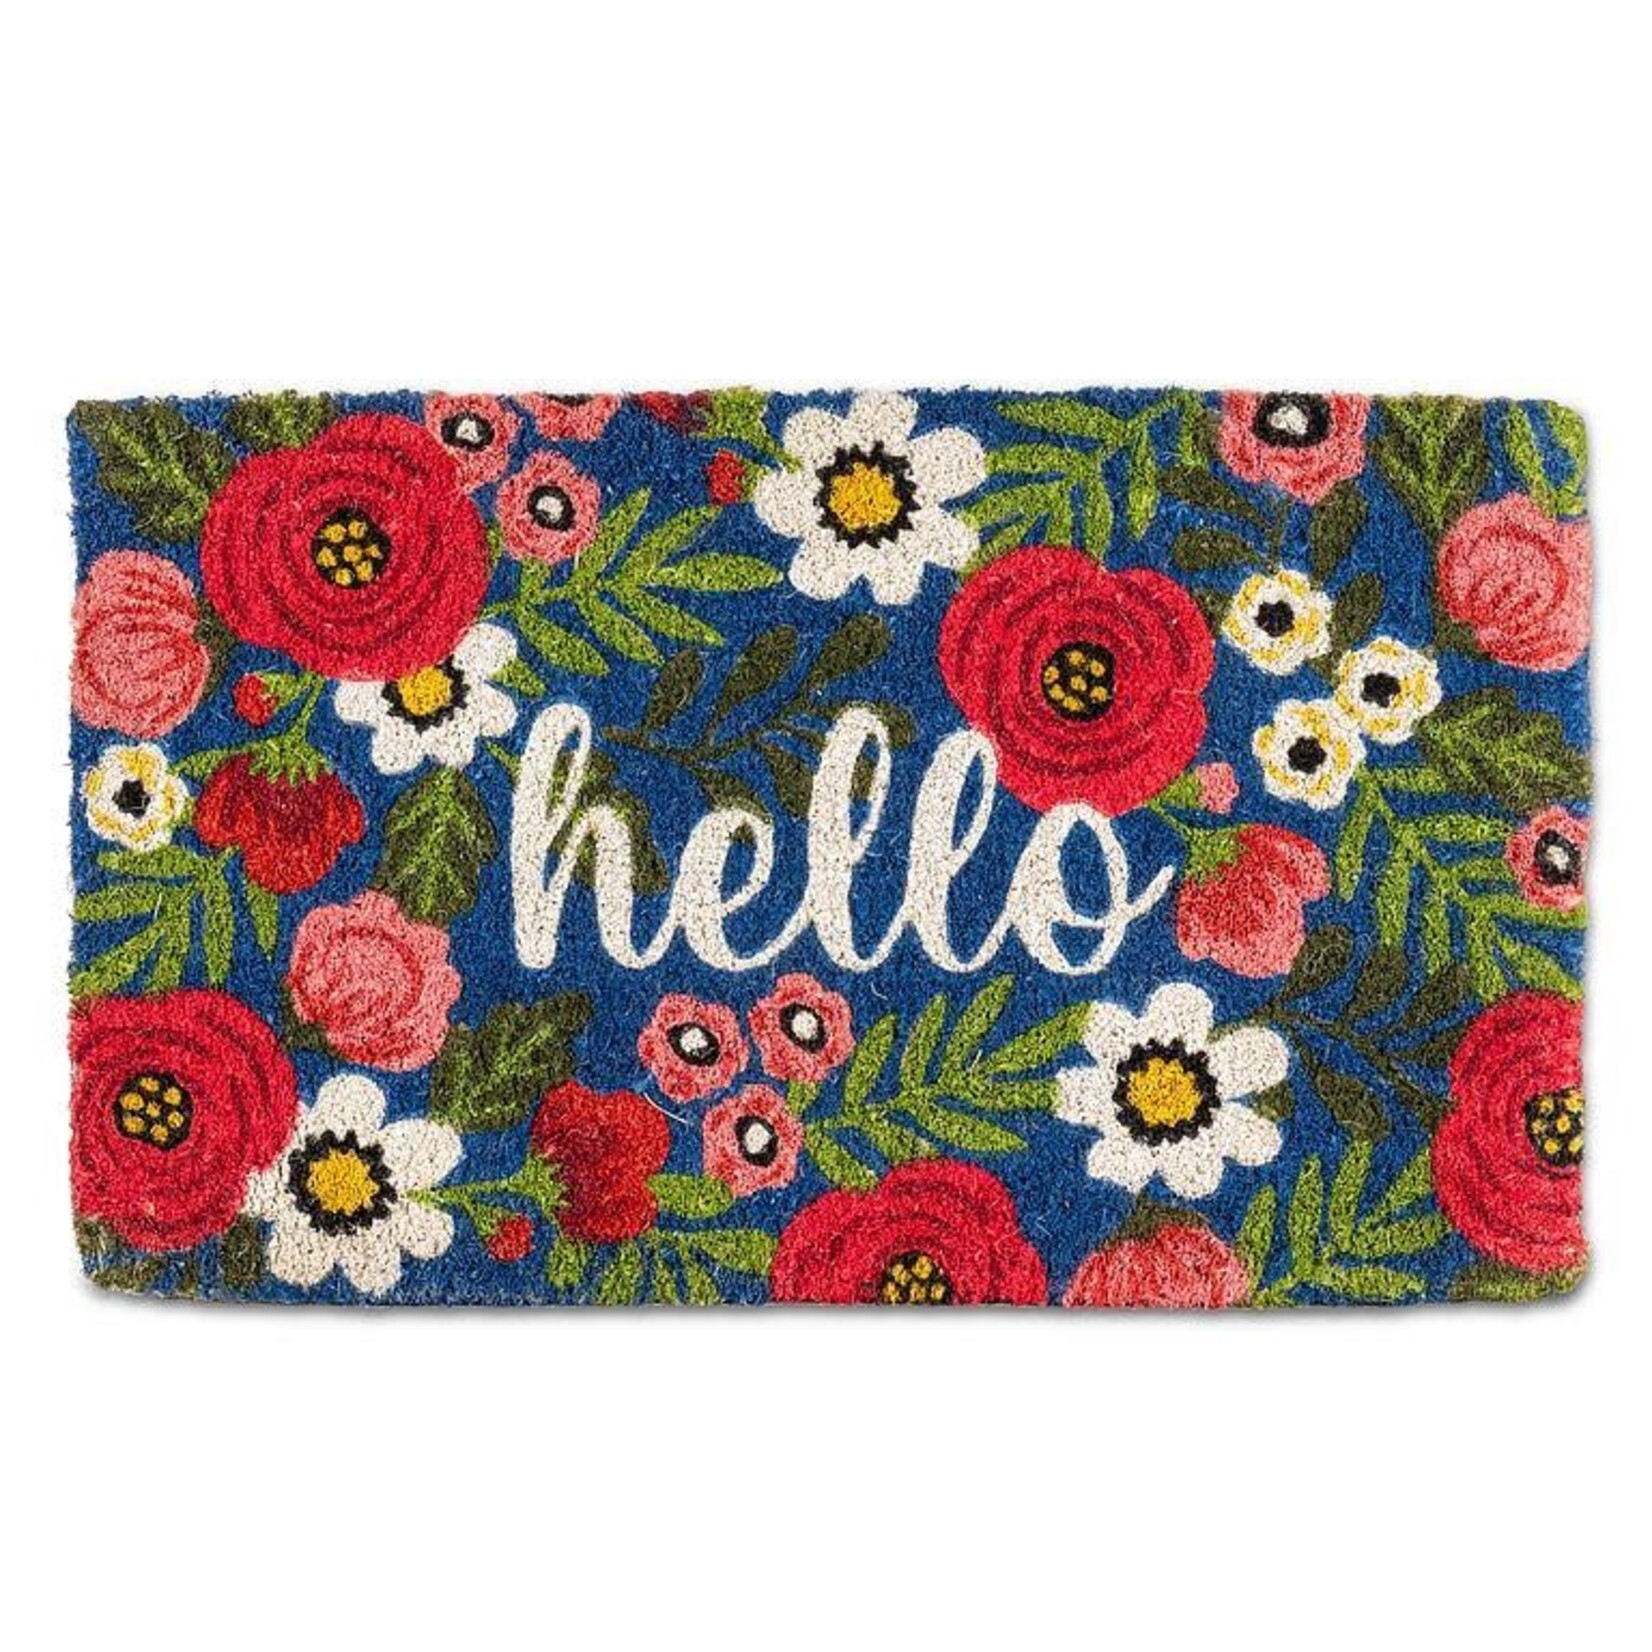 Floral Hello Doormat-Pnk/Navy-18x30"L